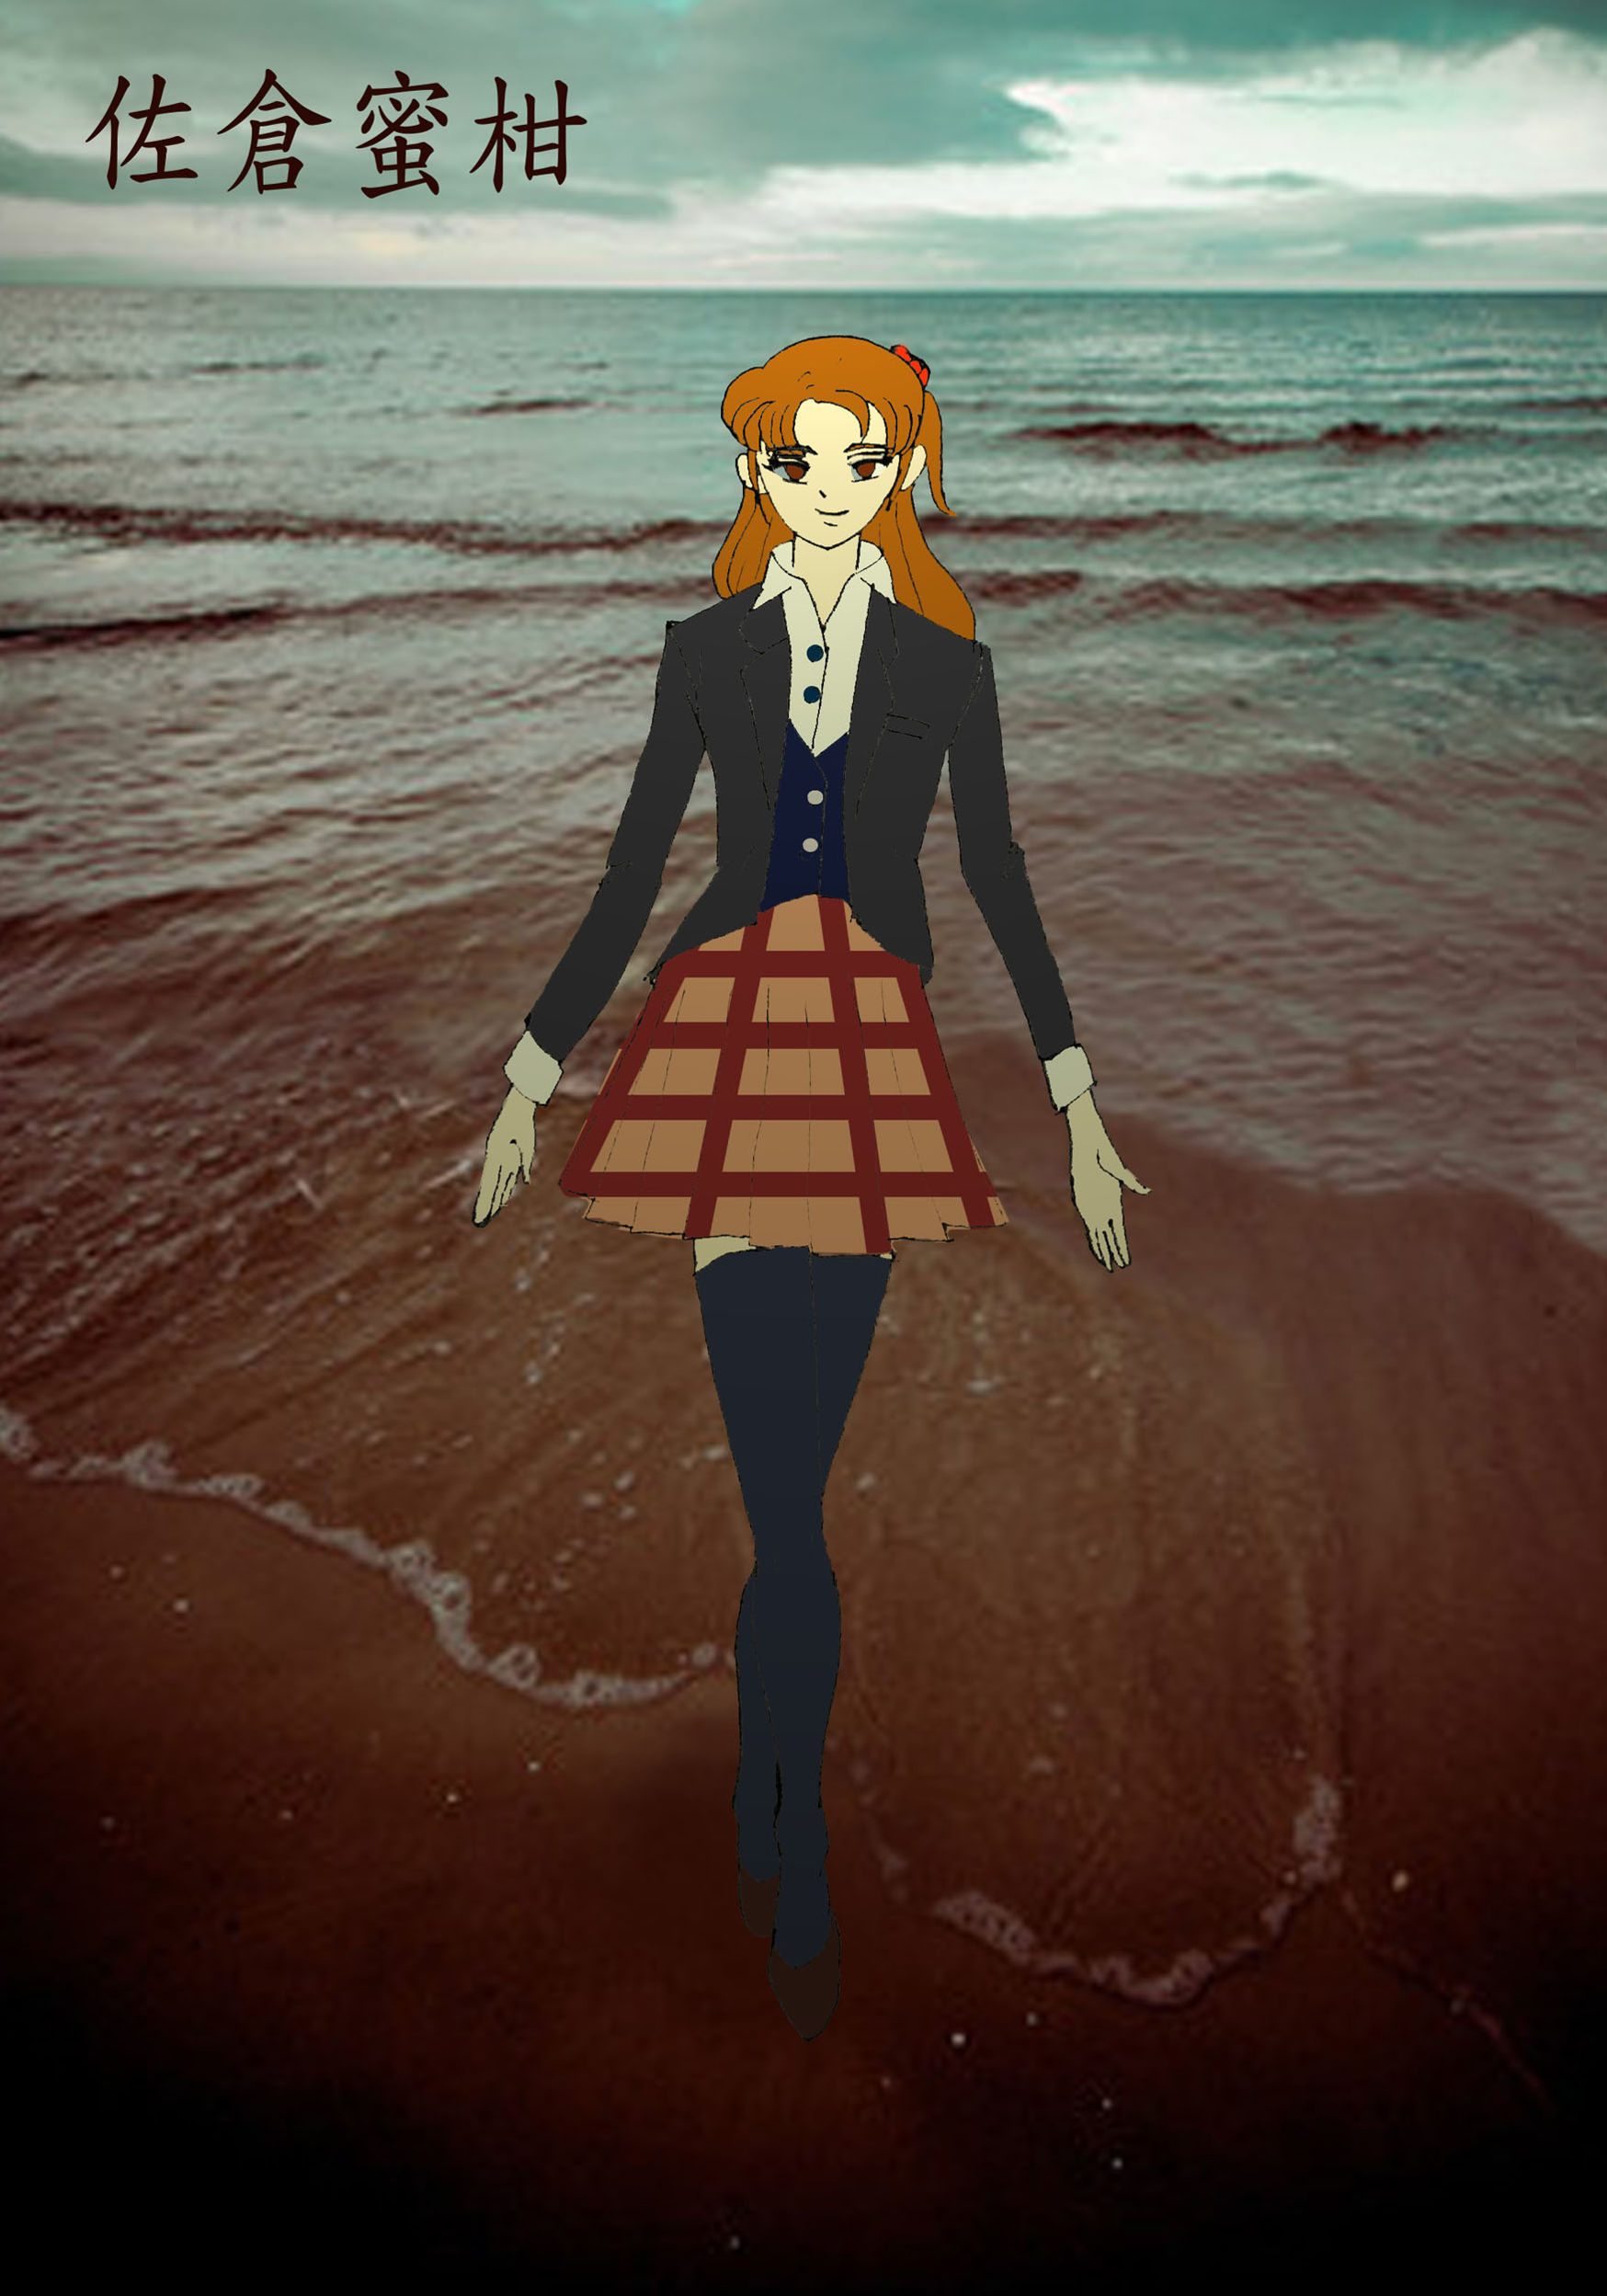 愛麗絲學園女主角蜜柑冬日海灘散步 學園愛麗絲哈啦板 巴哈姆特